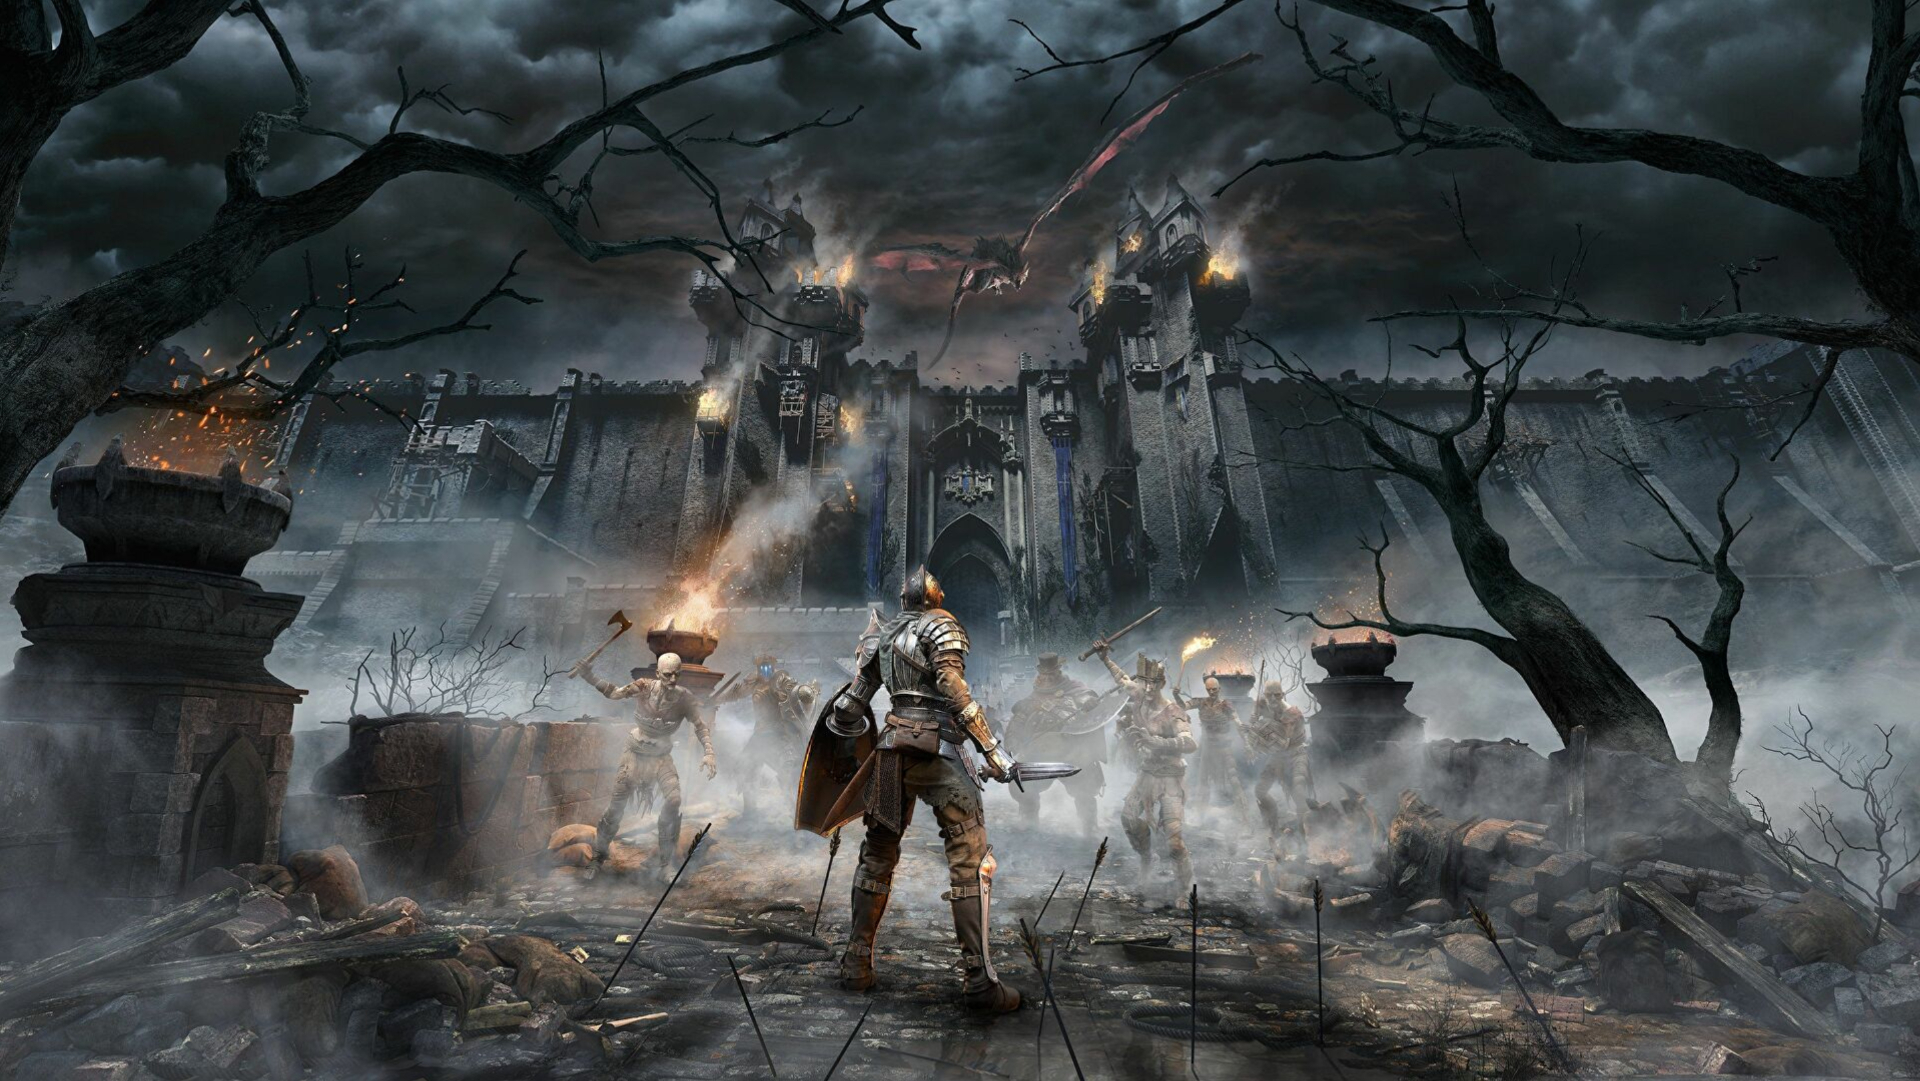 Arte-chave de Demon's Souls apresentando o protagonista enfrentando os mortos-vivos e os iminentes portões de Boletaria.